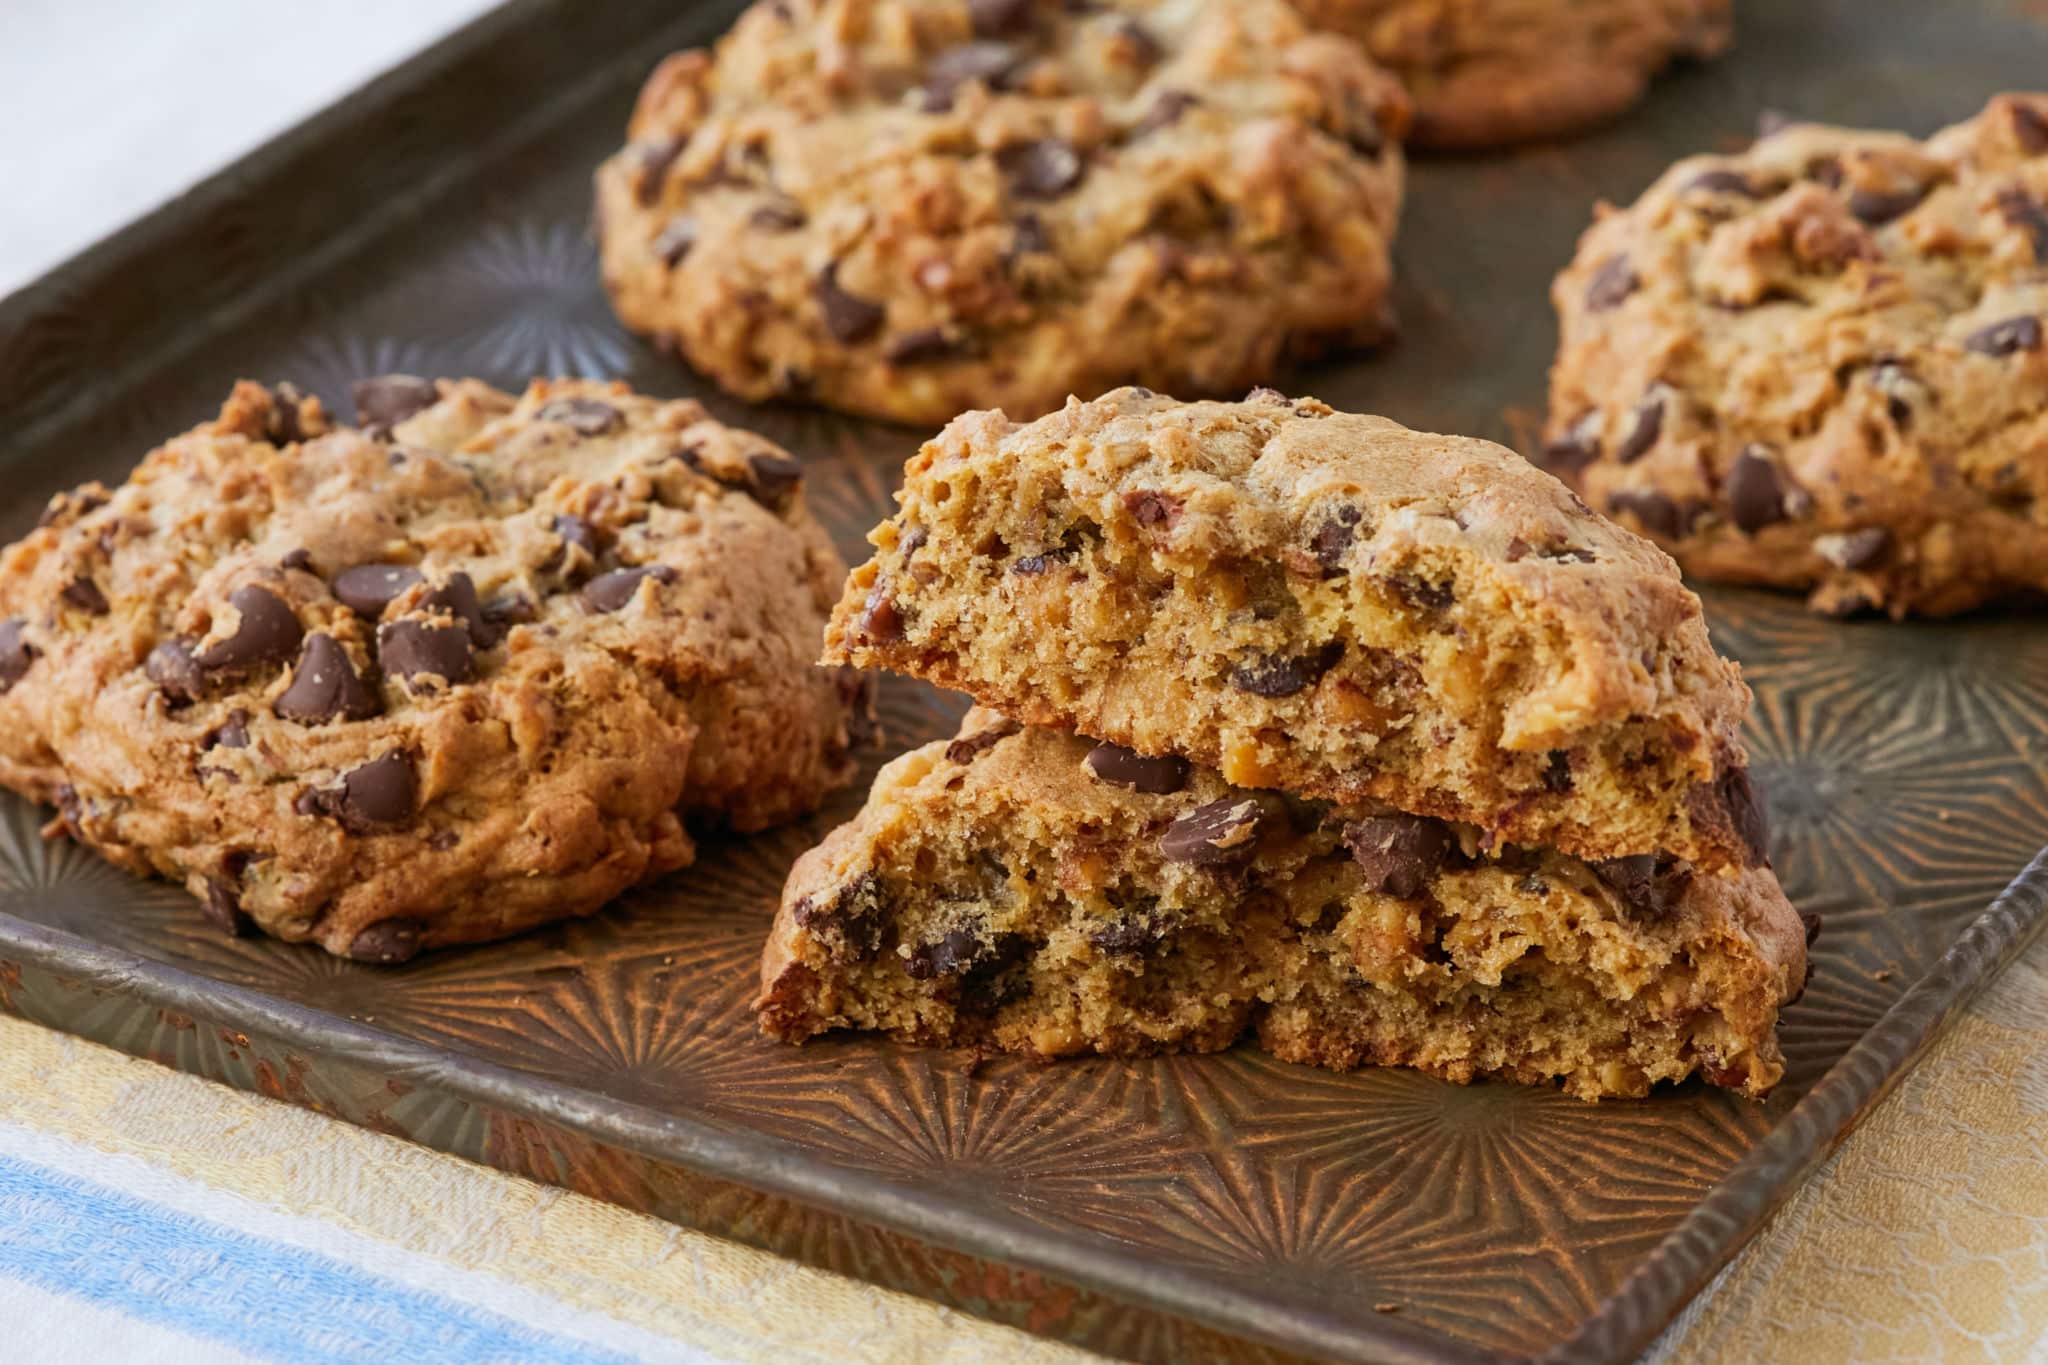 Baking Tips for Jumbo Cookies